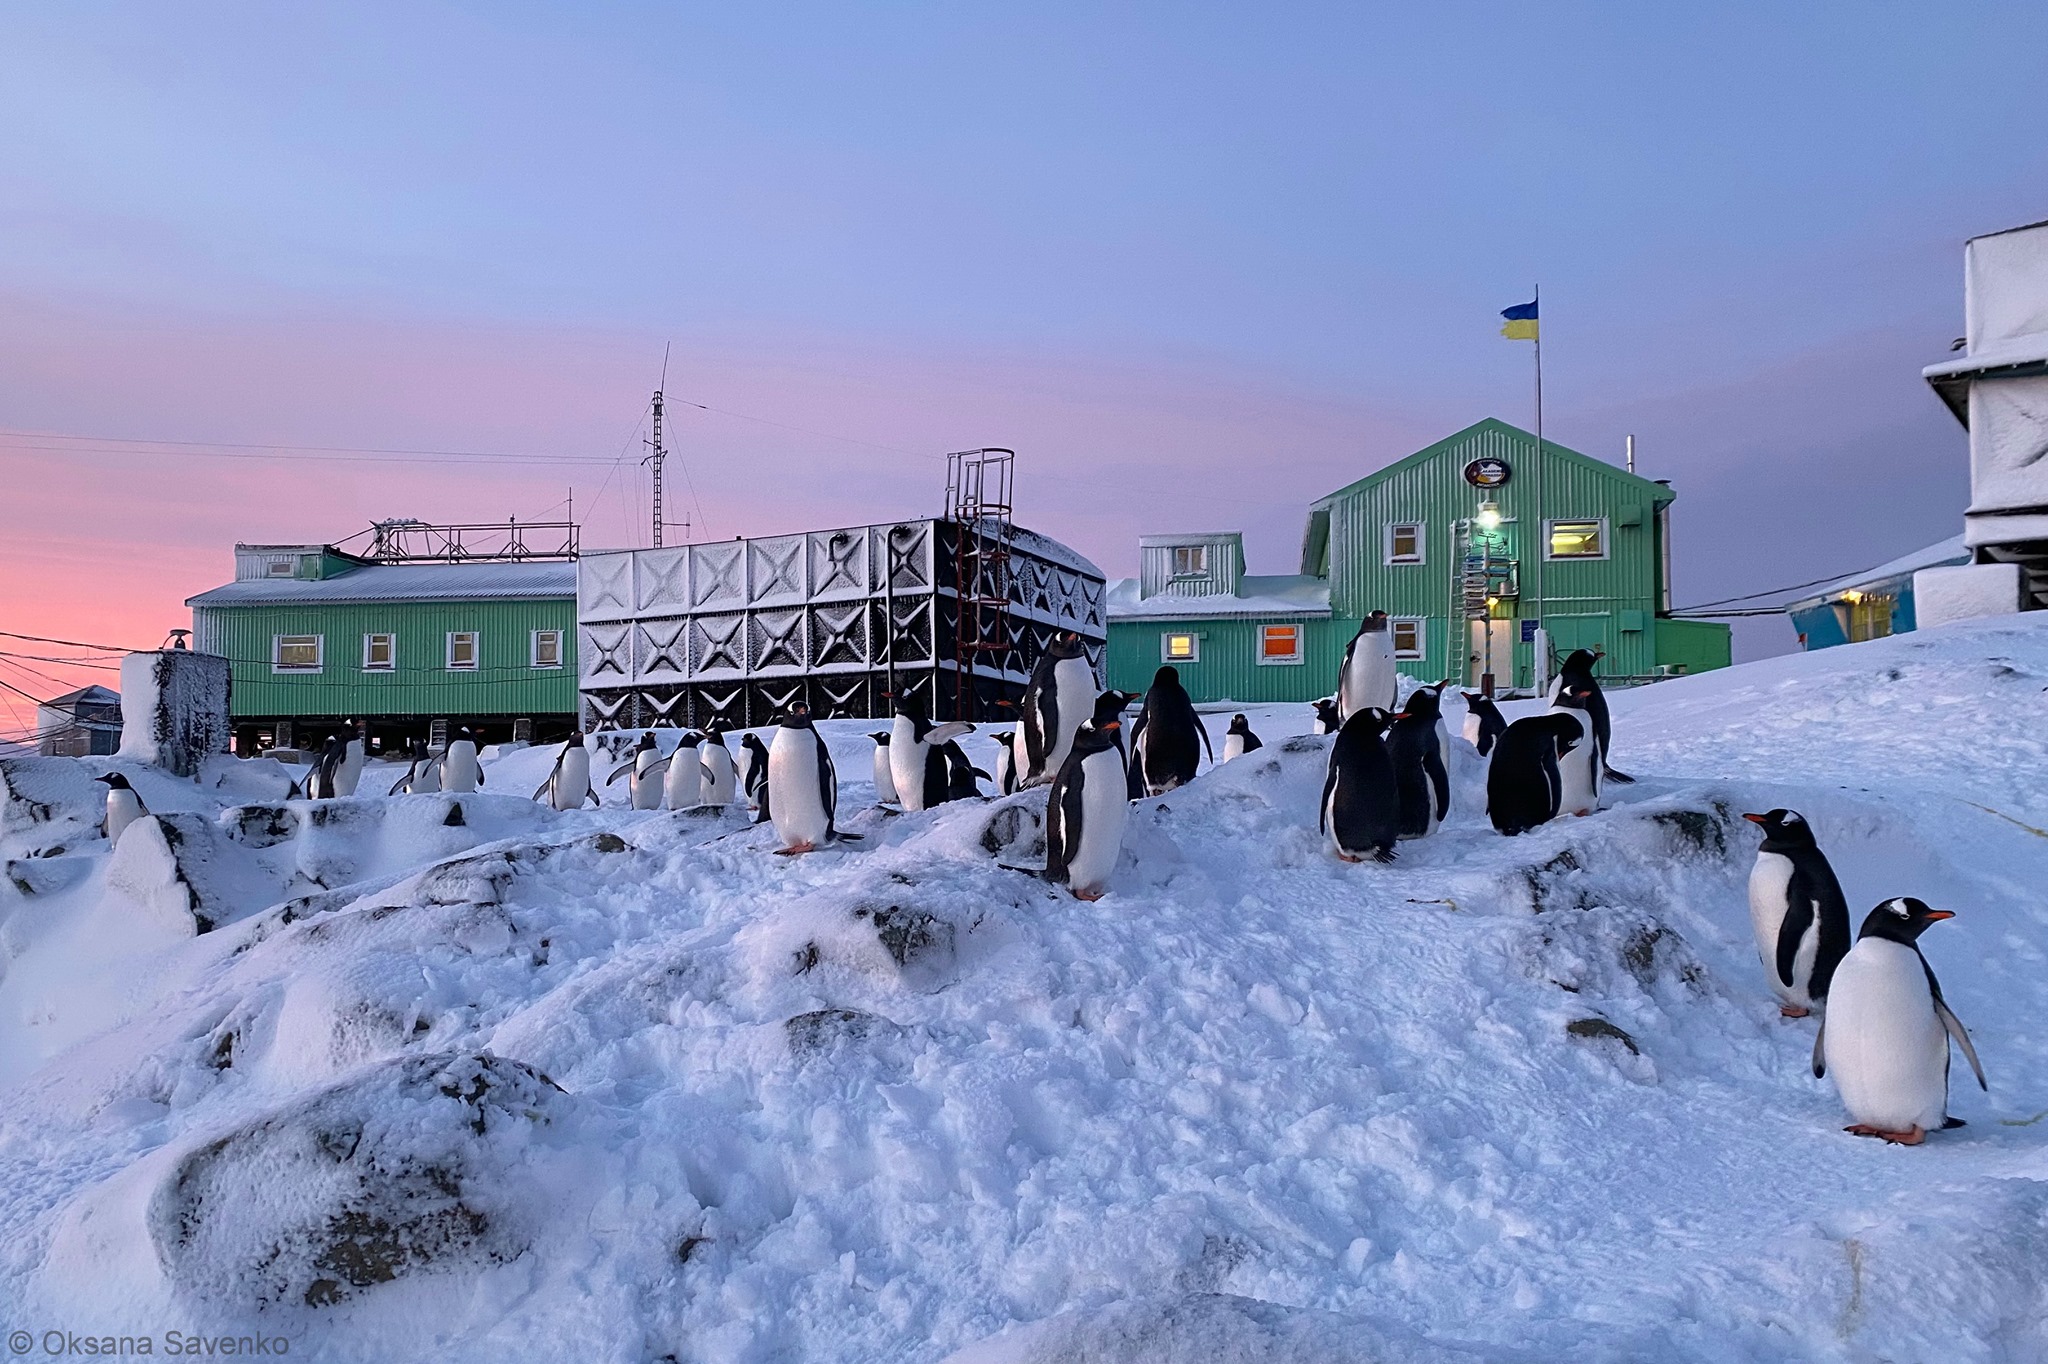 Через сильні снігопади пінгвінам ніде гніздуватися - це може вплинути на їхню популяцію. Фото: facebook.com/AntarcticCenter